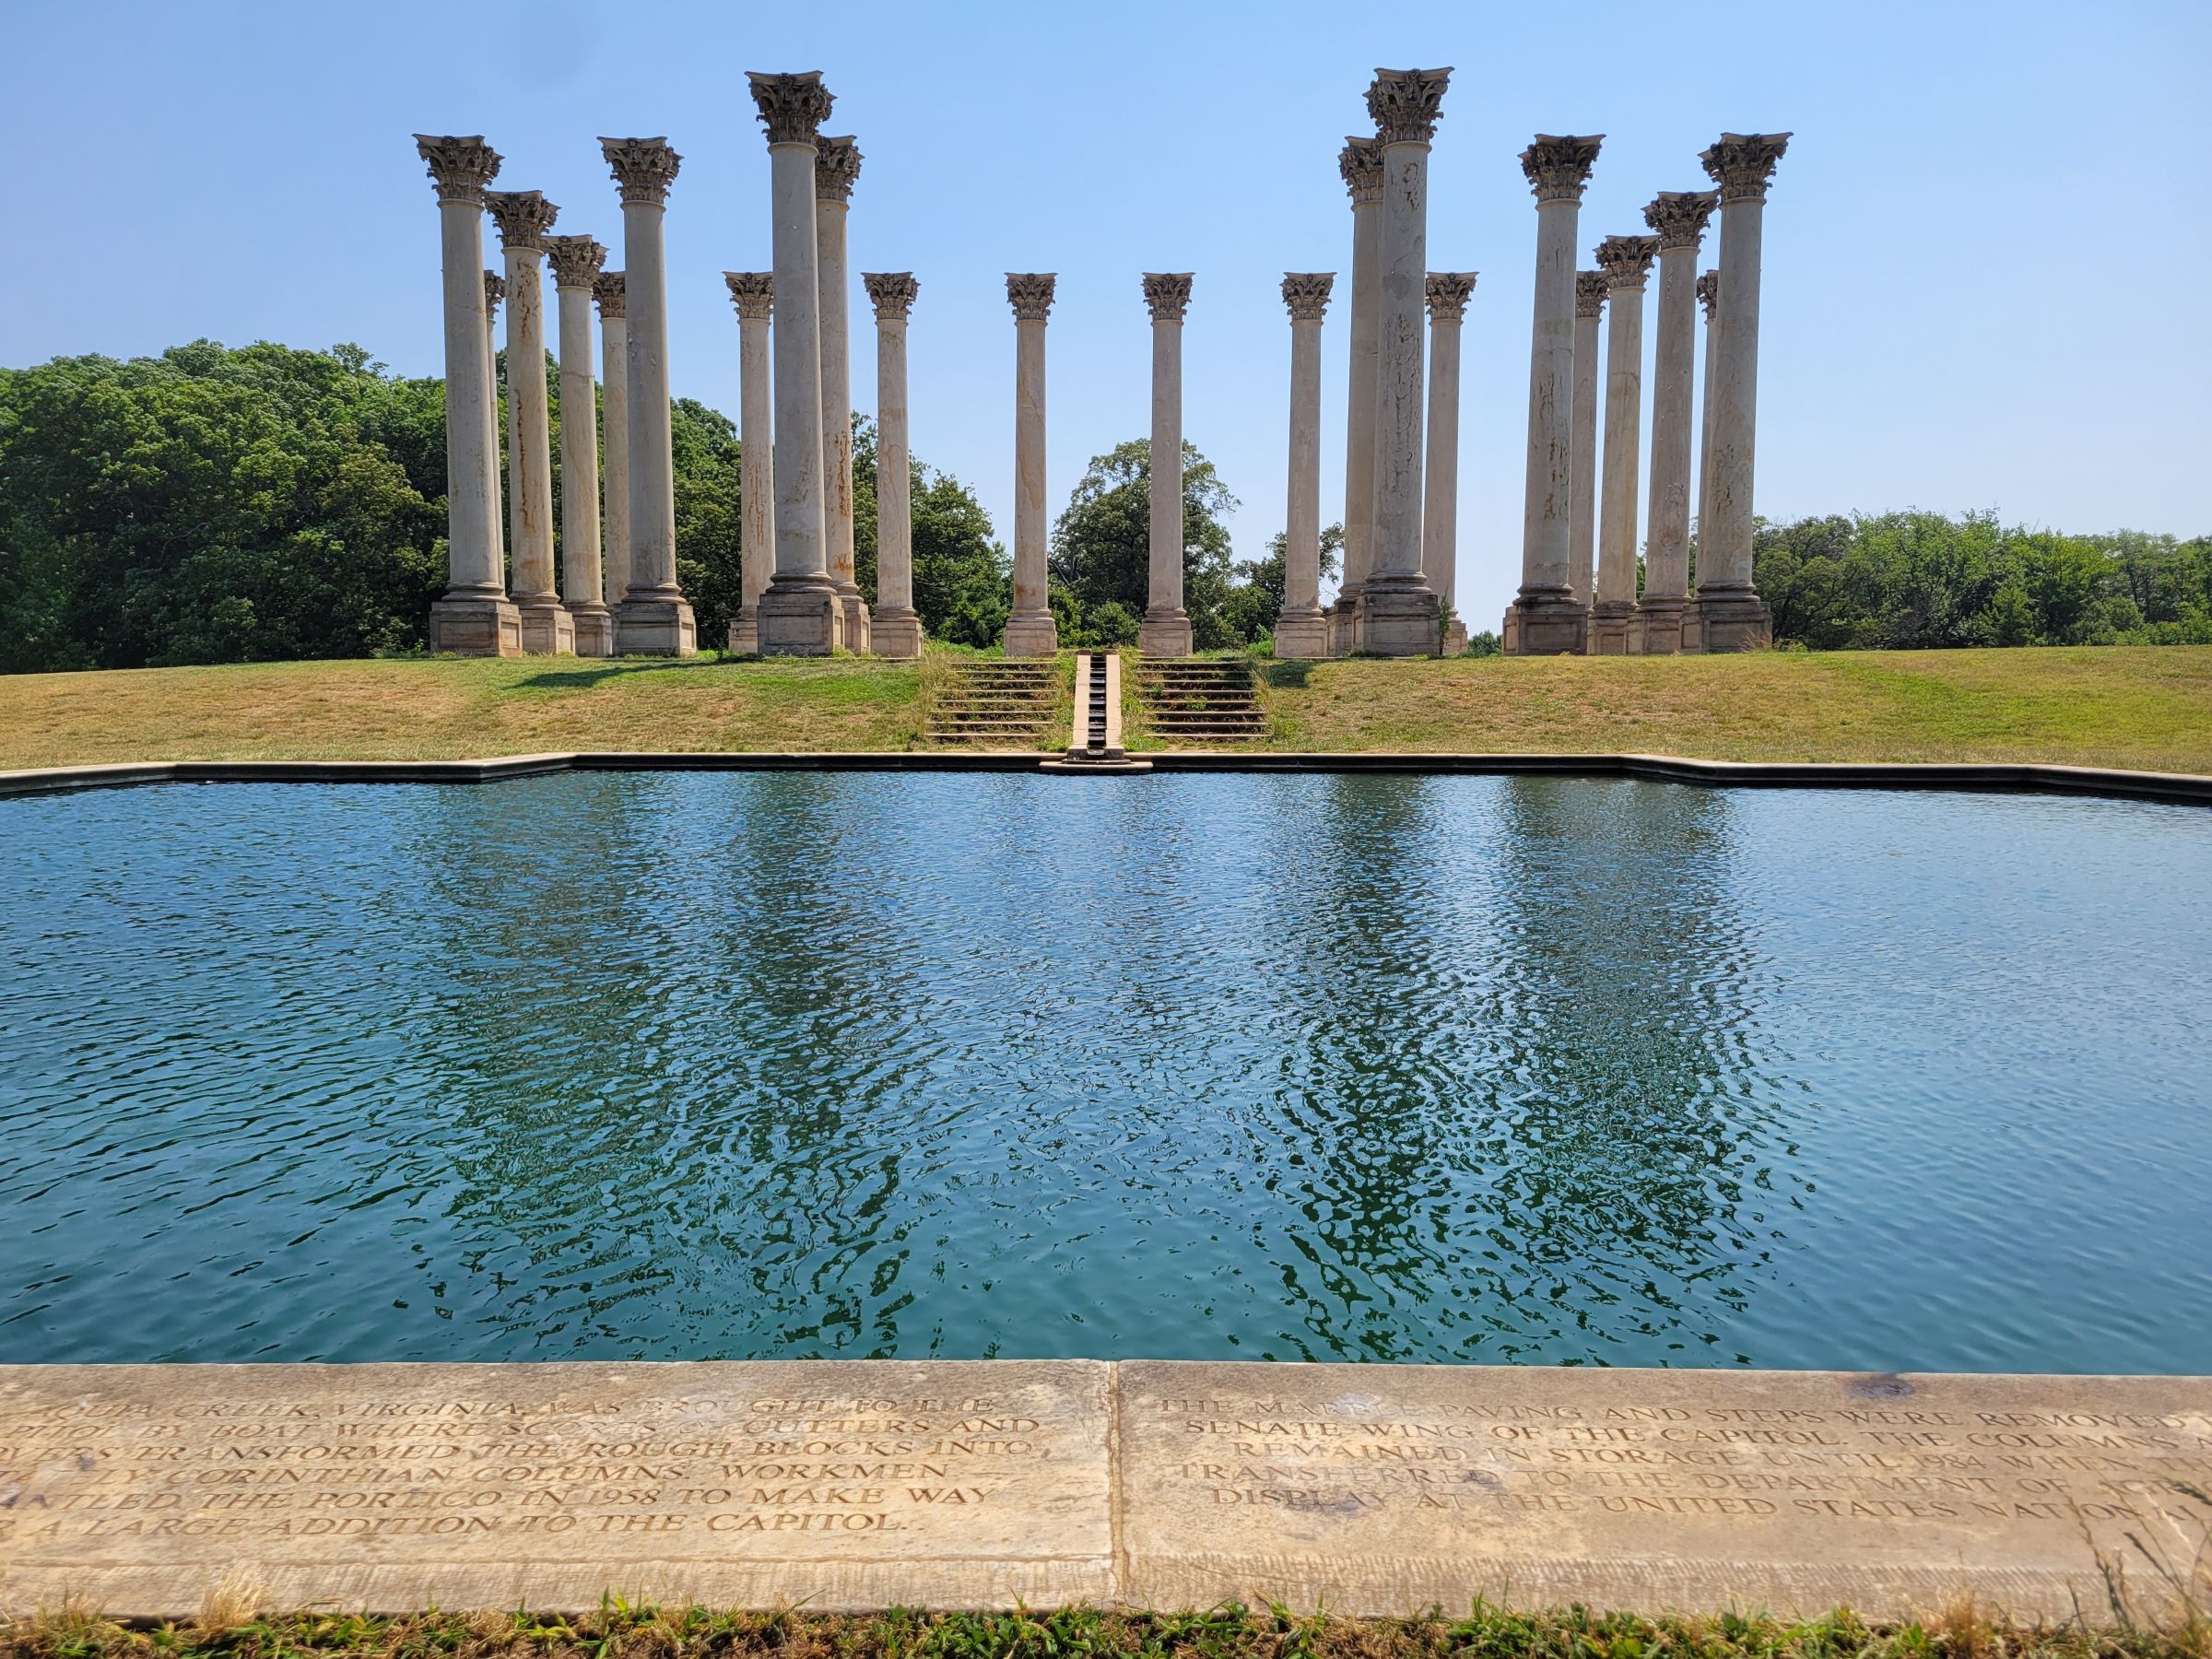 의사당 기둥(Capitol Columns)과 분재 박물관 등이 유명한 워싱턴DC의 국립수목원(National Arboretum)